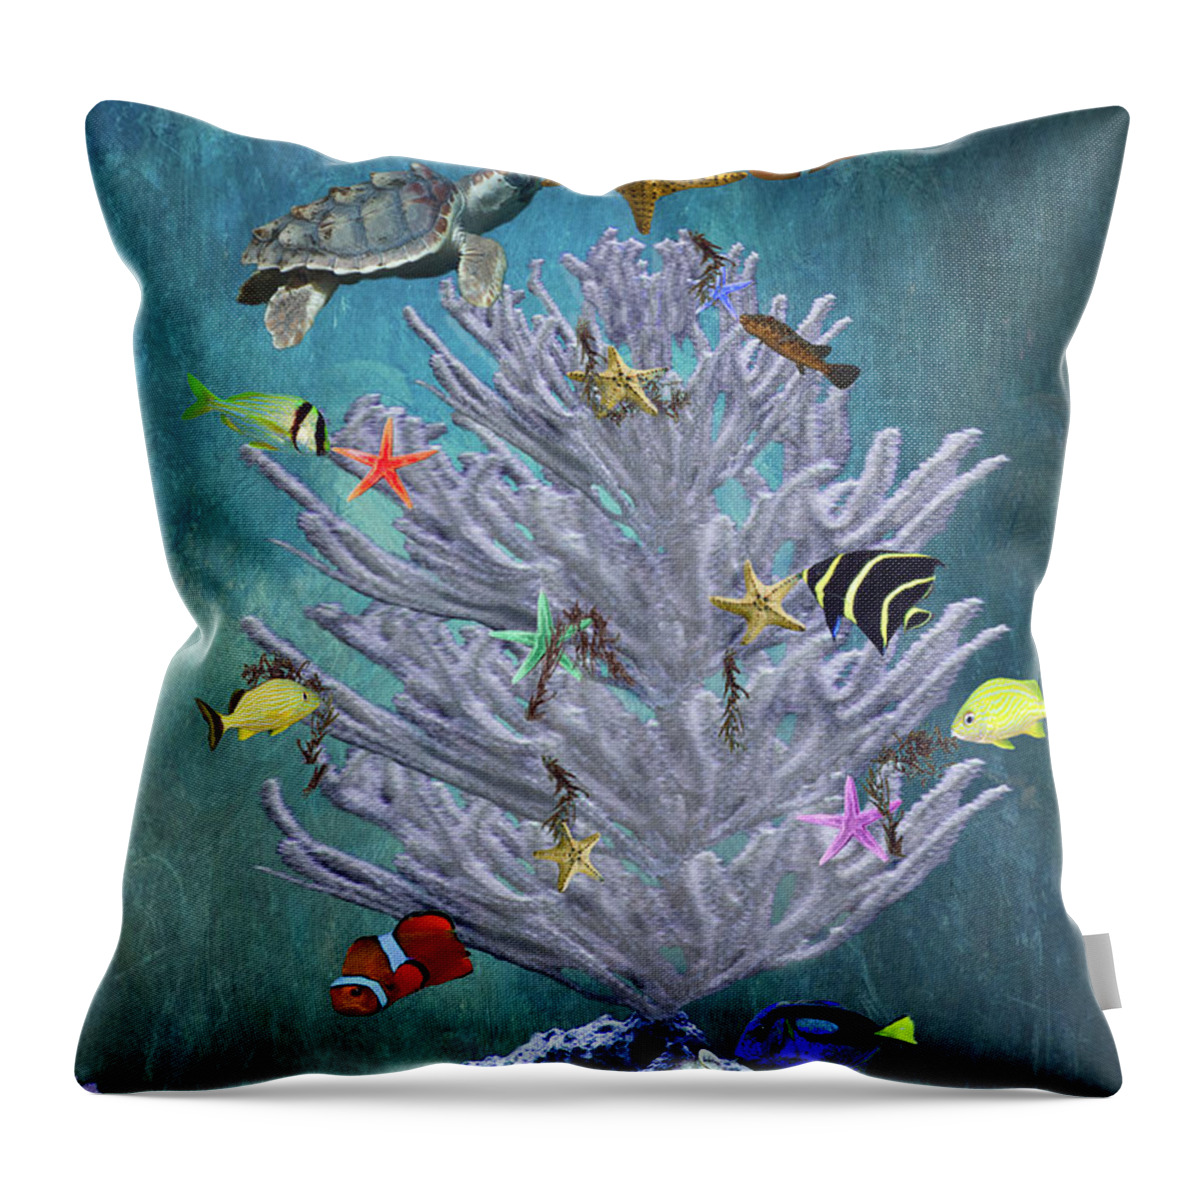 Underwater Throw Pillow featuring the digital art Seasons Greetings by Melinda Moore